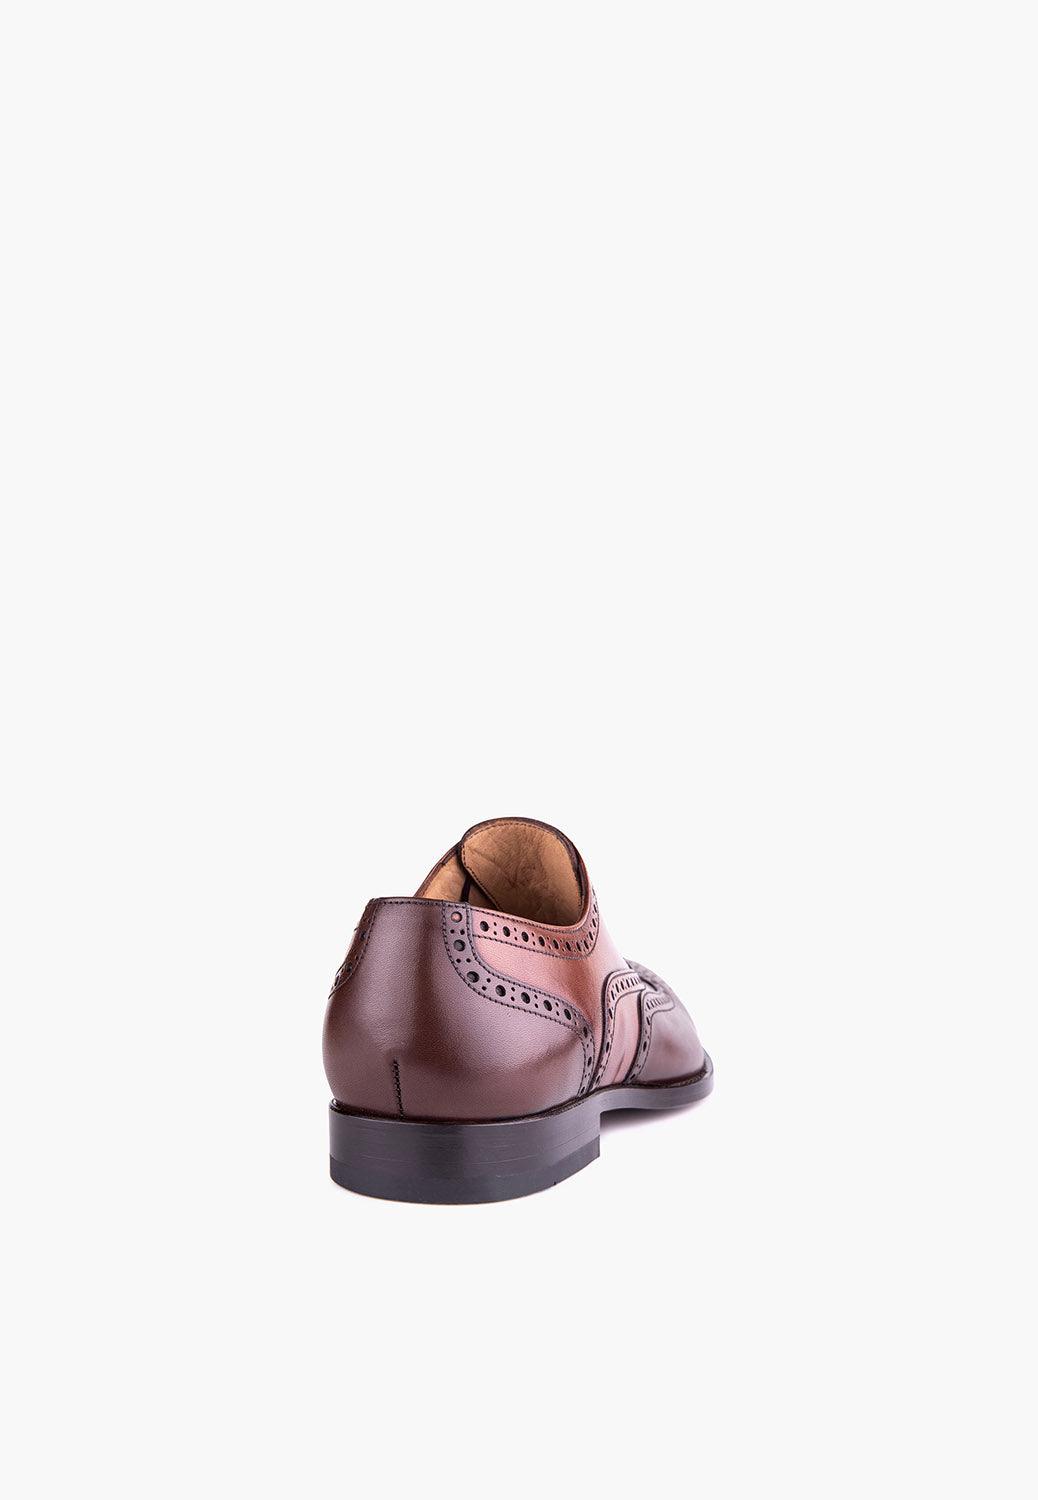 Claremont Oxford Cognac-Brown - SEPOL Shoes